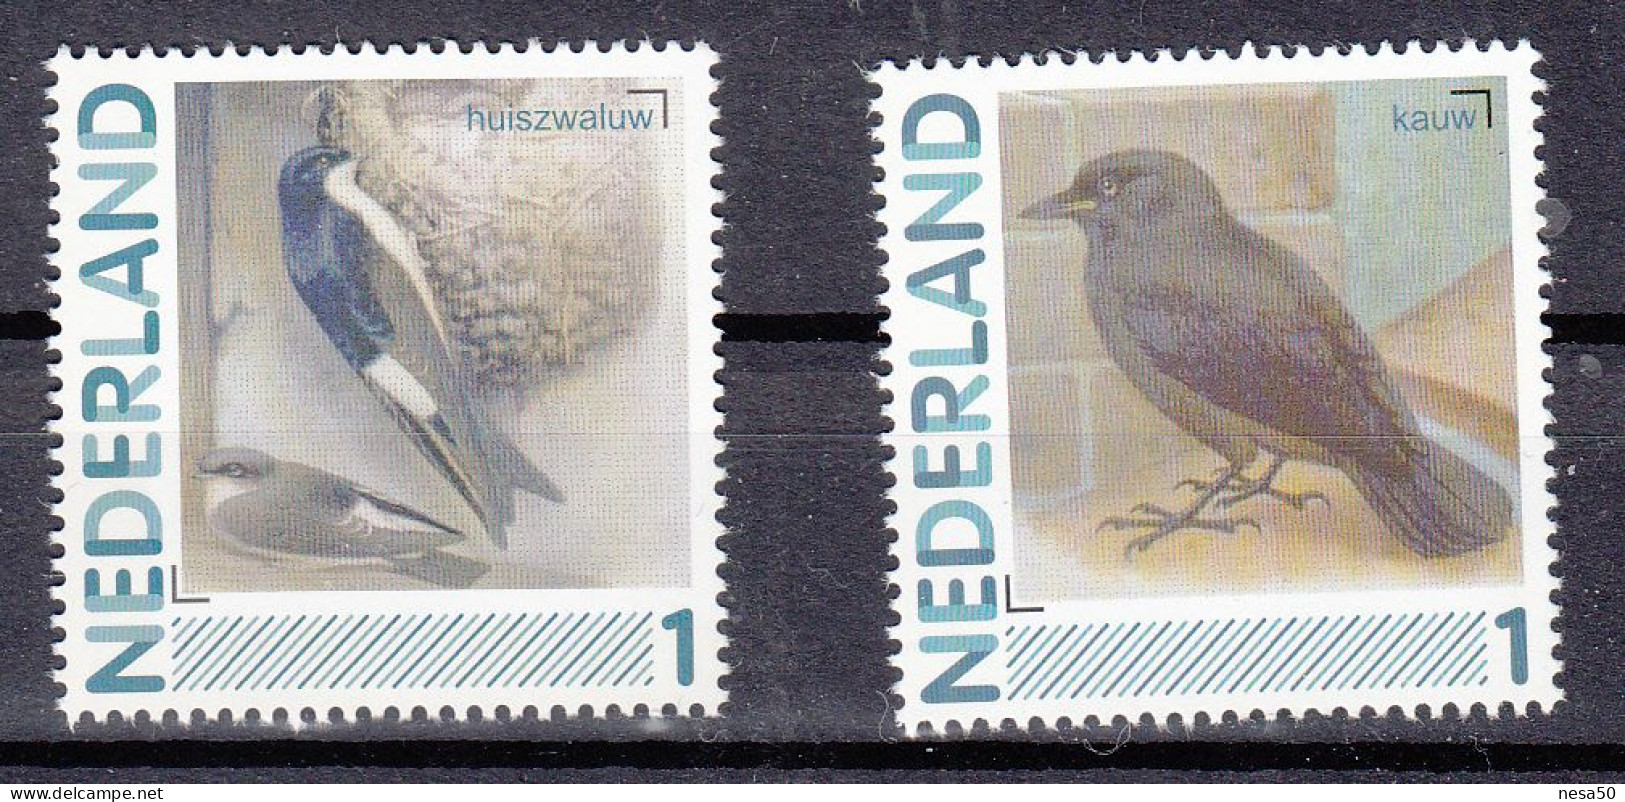 Nederland Persoonlijke Zegels: Vogels, Birds, : Huiszwaluw + Kauw, House Martin + Jackdaw - Ungebraucht